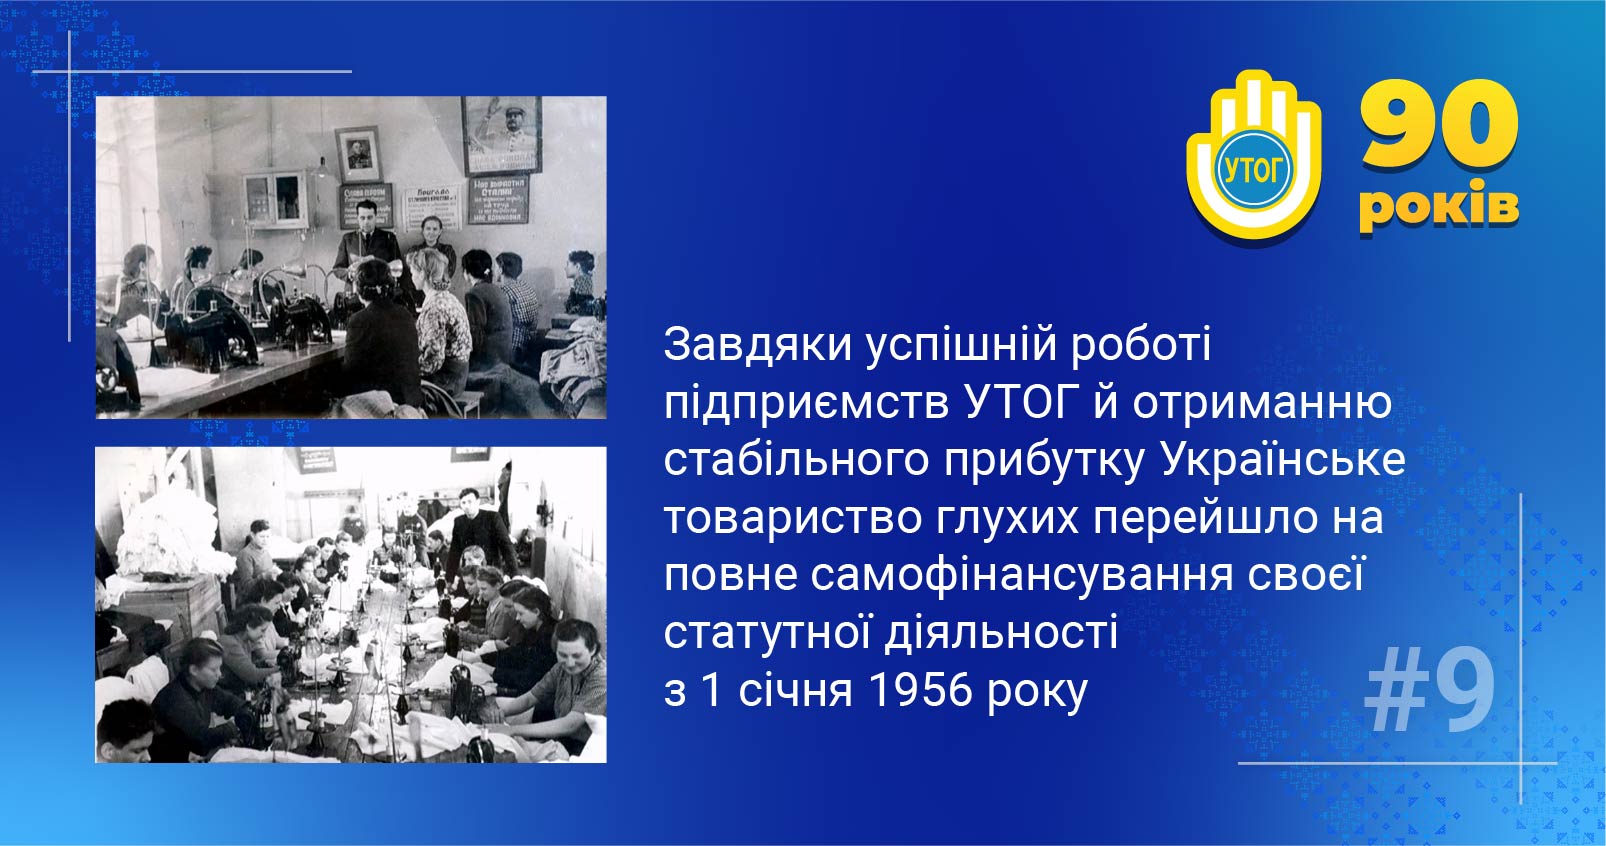 9. Завдяки успішній роботі підприємств УТОГ й отриманню стабільного прибутку Українське товариство глухих перейшло на повне самофінансування своєї статутної діяльності з 1 січня 1956 року.